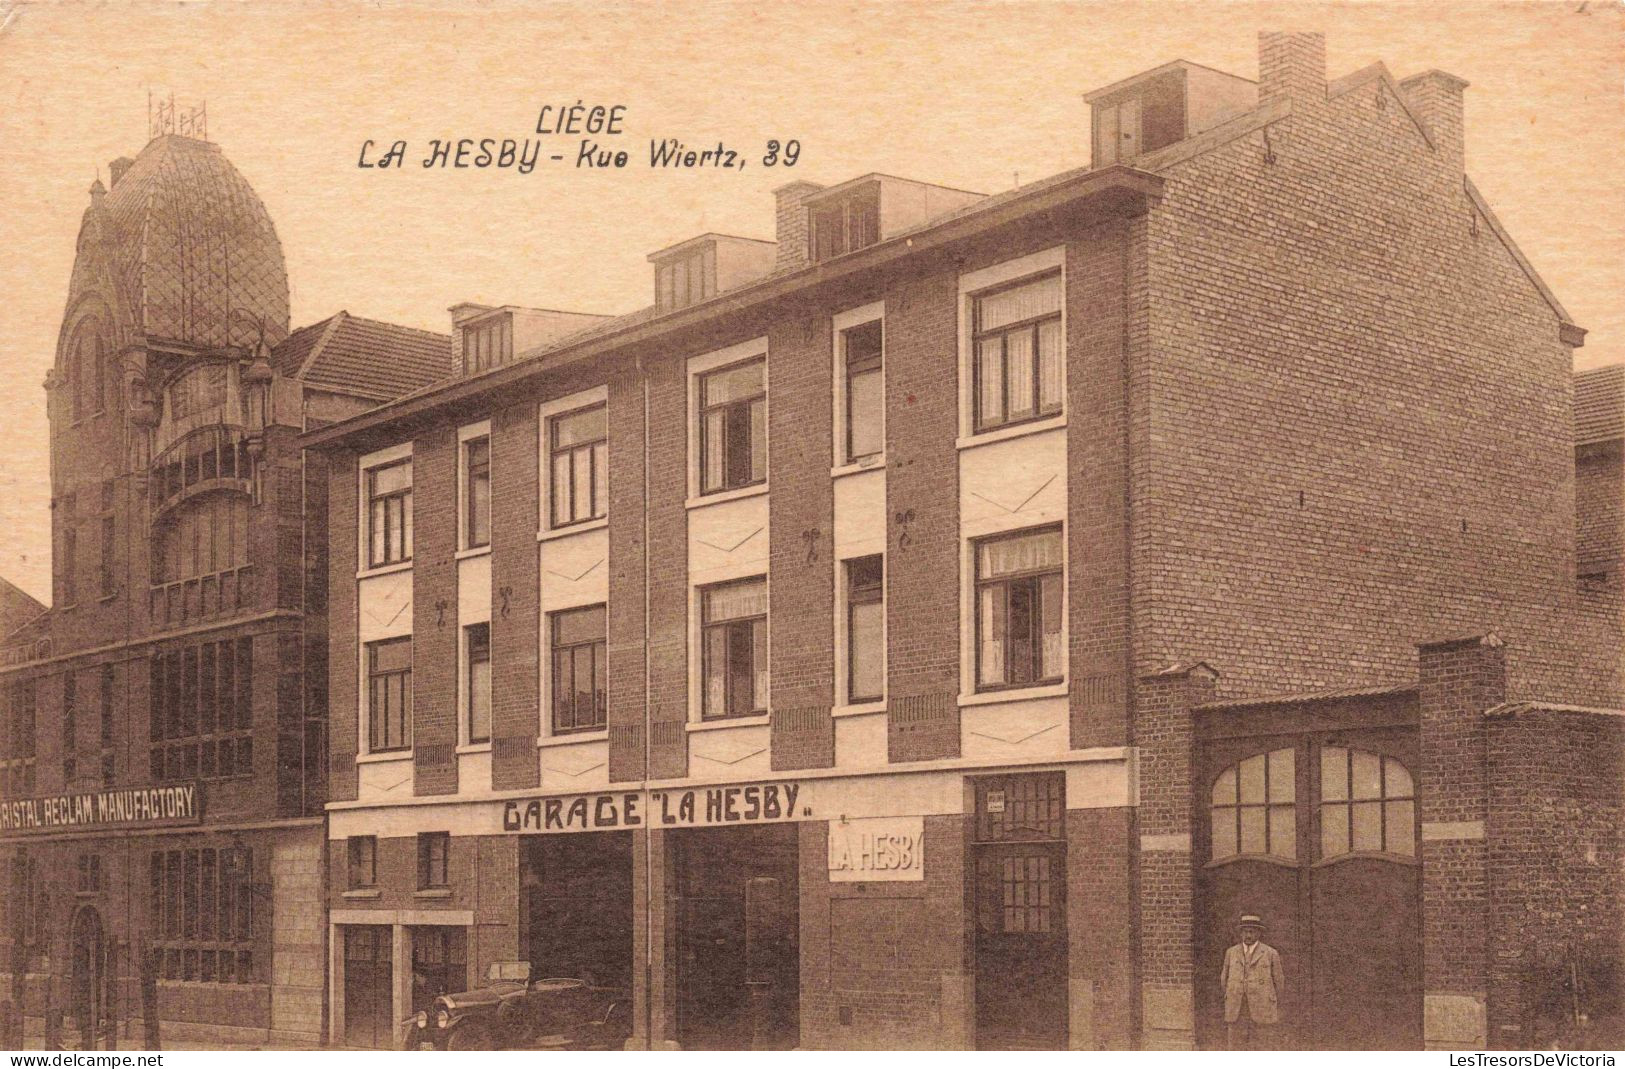 BELGIQUE - Liège - La Hesby - Kue Wiertz, 39 - Garage - Carte Postale Ancienne - Lüttich